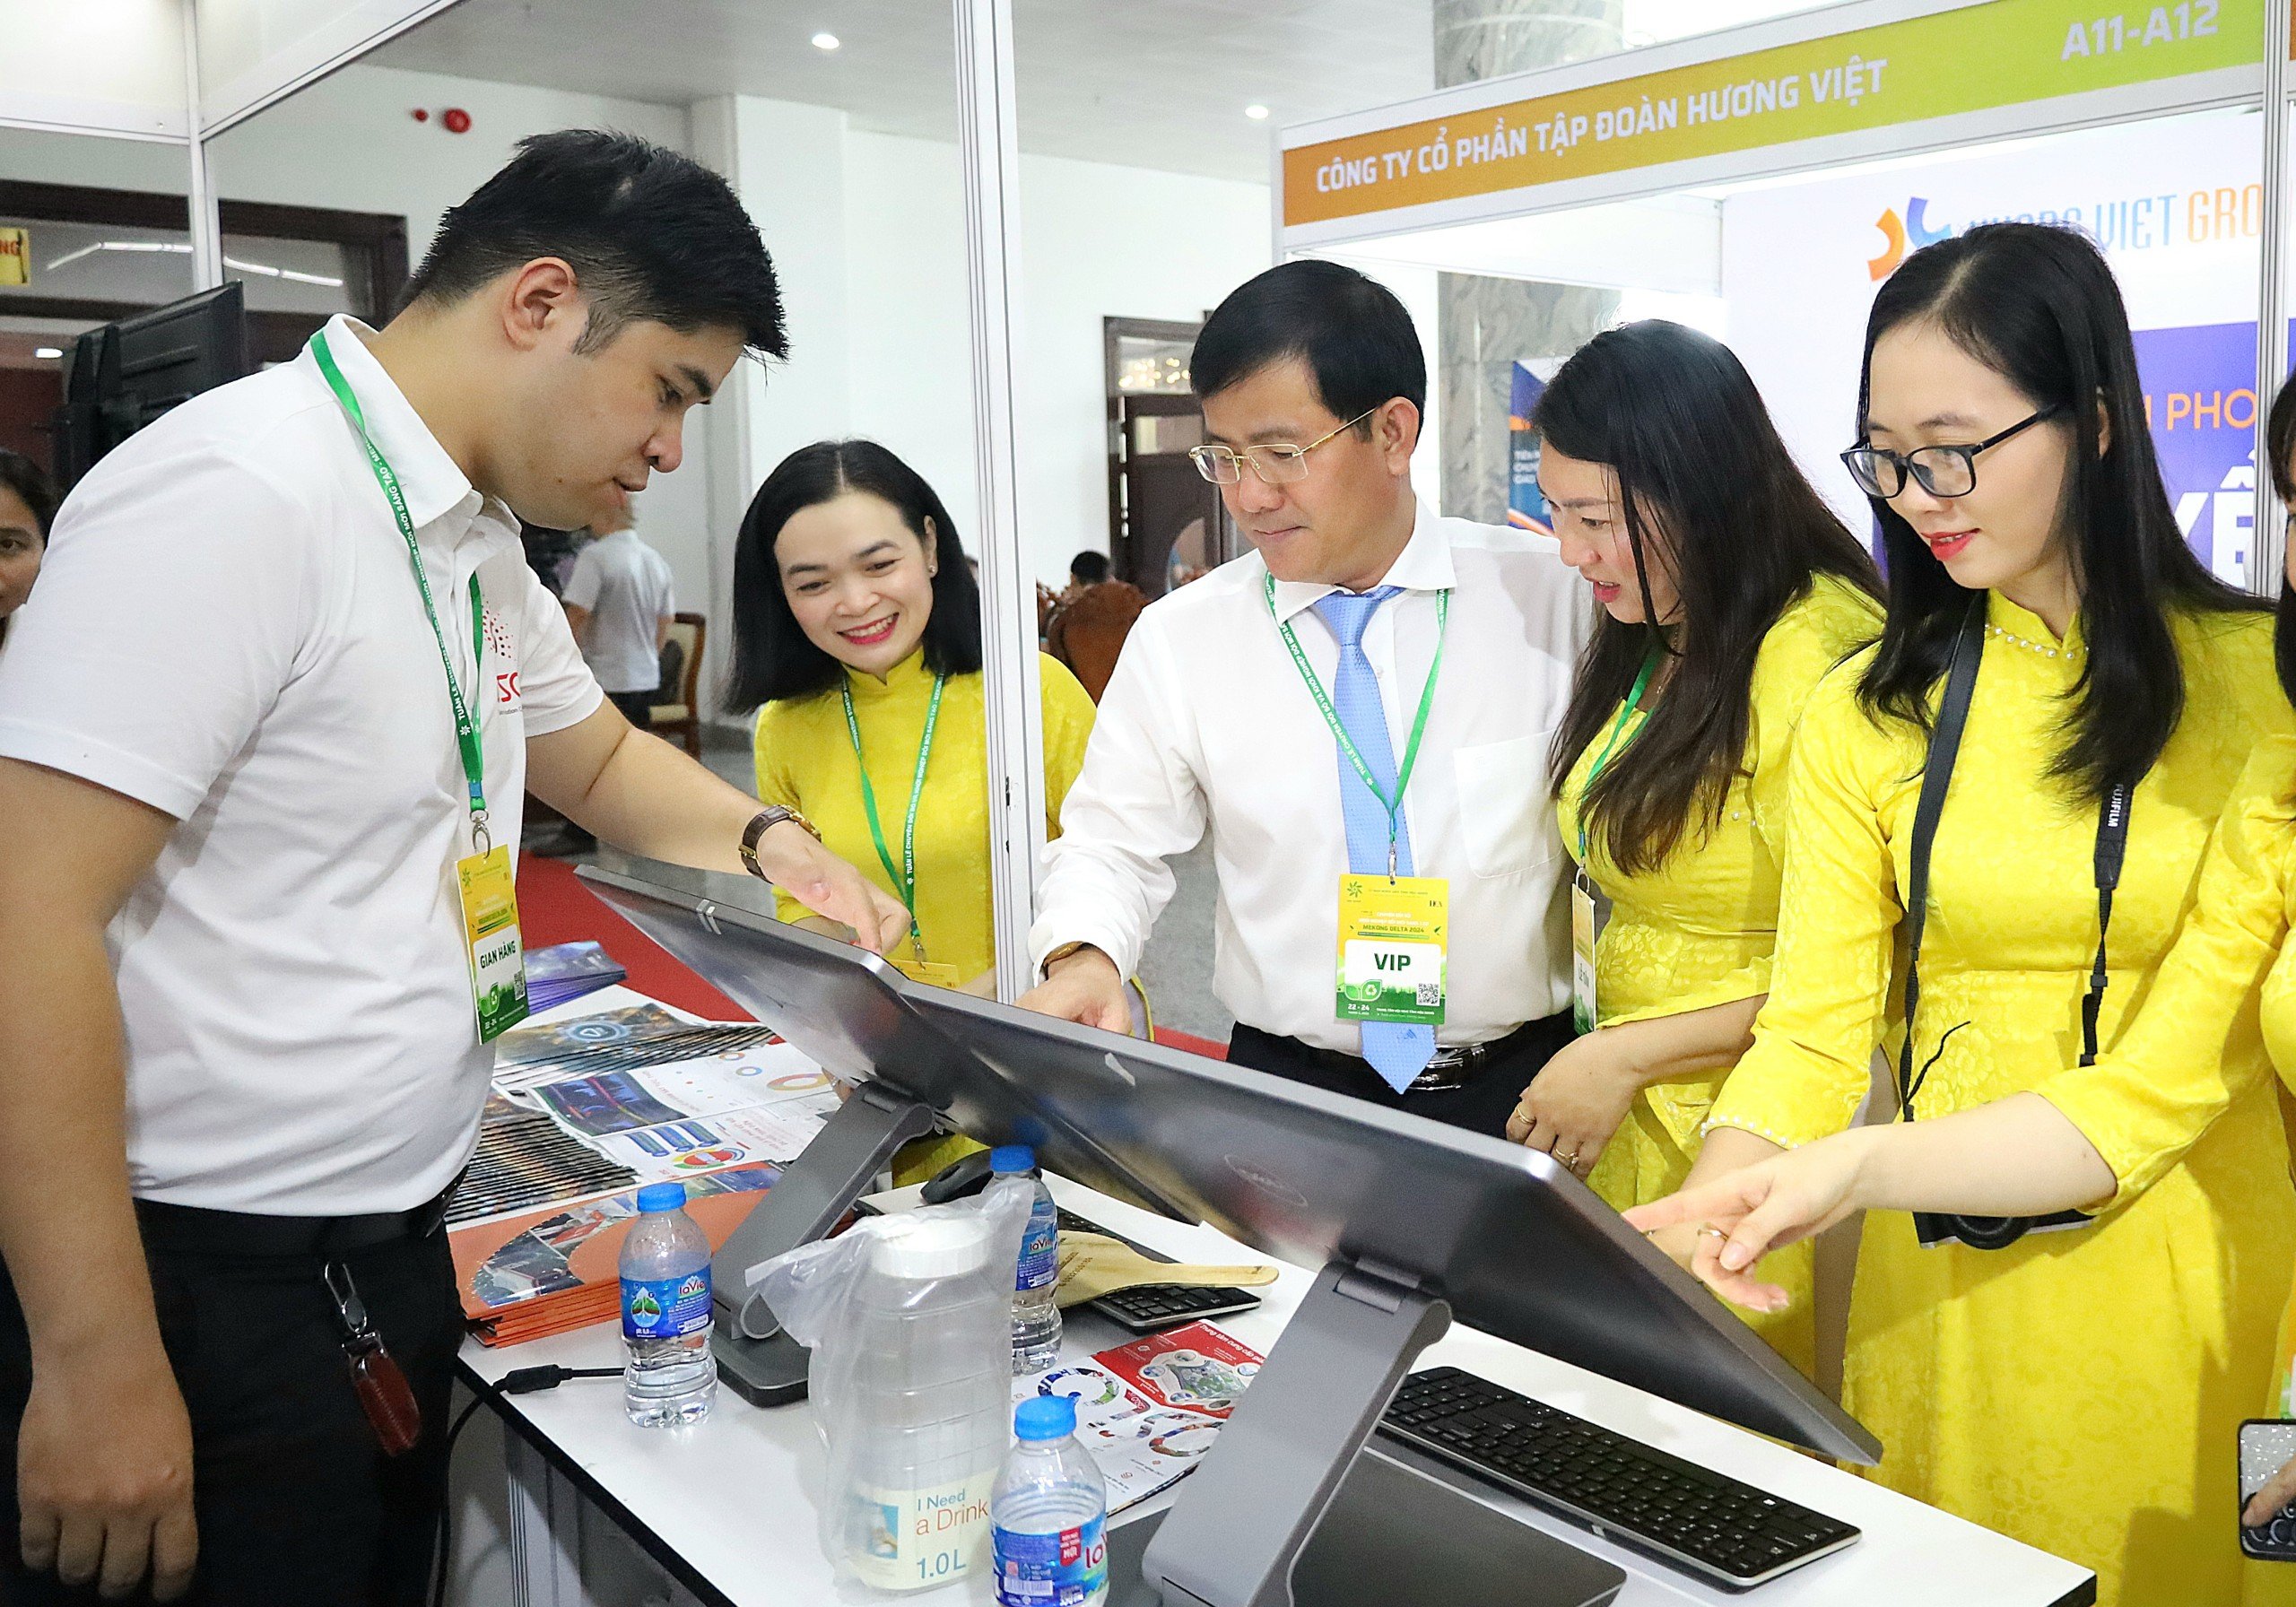 Ông Trần Văn Huyến - Phó Bí thư Thường trực Tỉnh ủy, Chủ tịch HĐND tỉnh Hậu Giang tham quan khu vực trưng bày sản phẩm công nghệ.